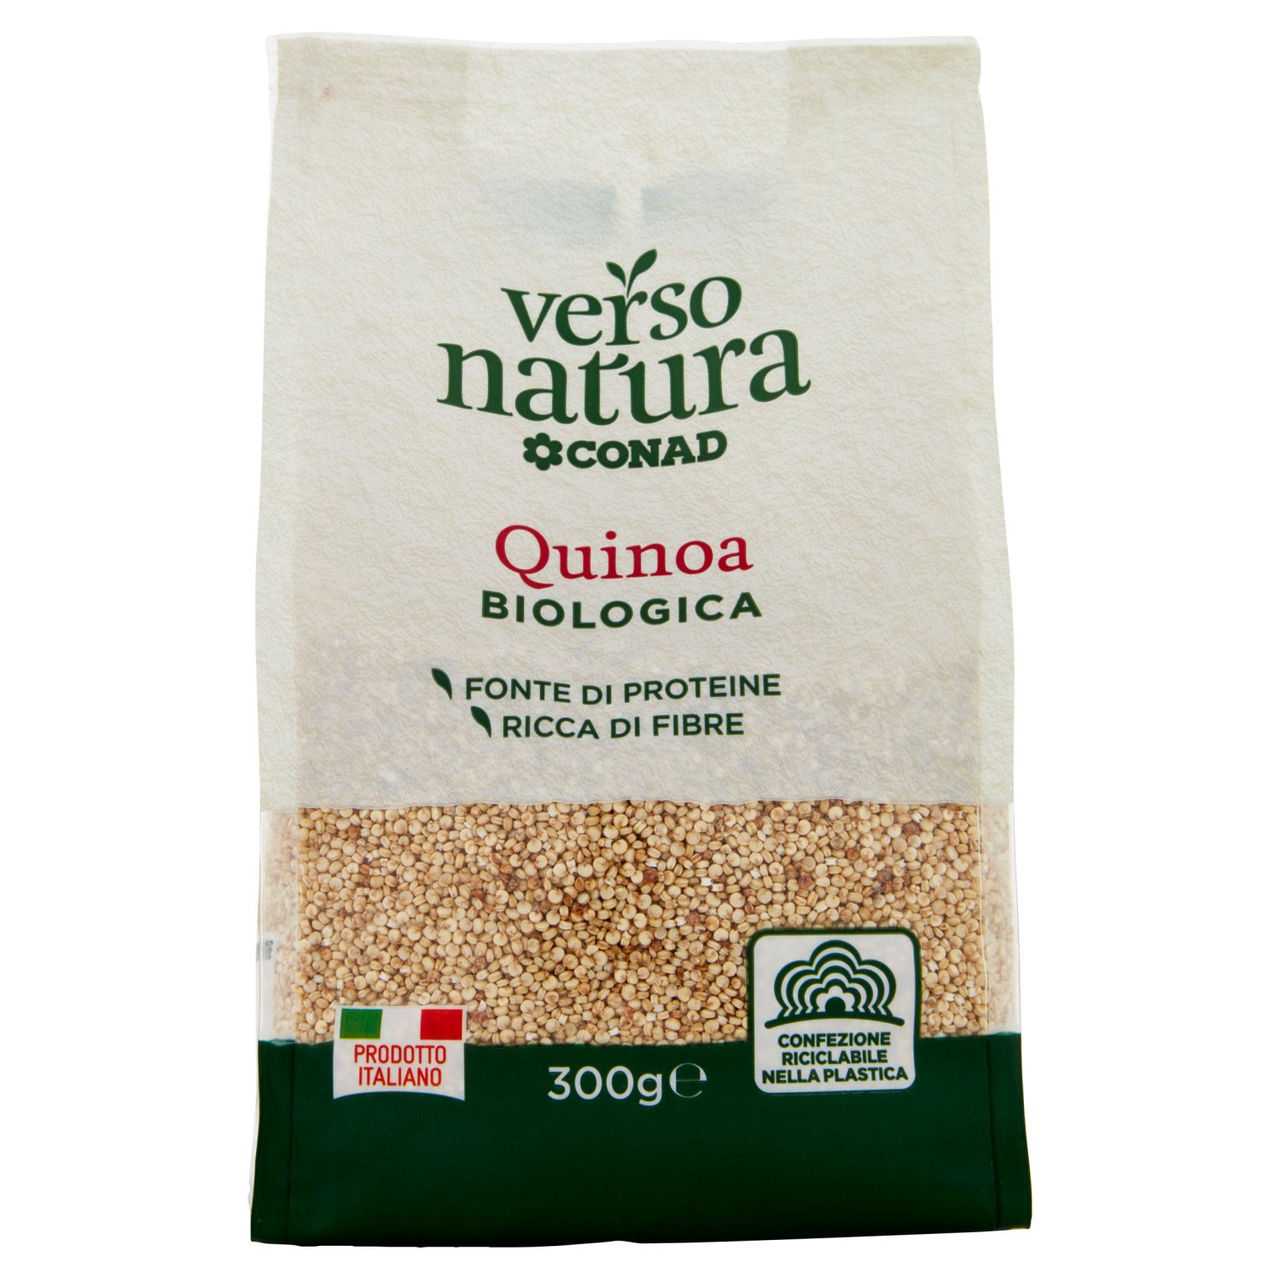 Quinoa Biologica 300 g Verso Natura Bio Conad